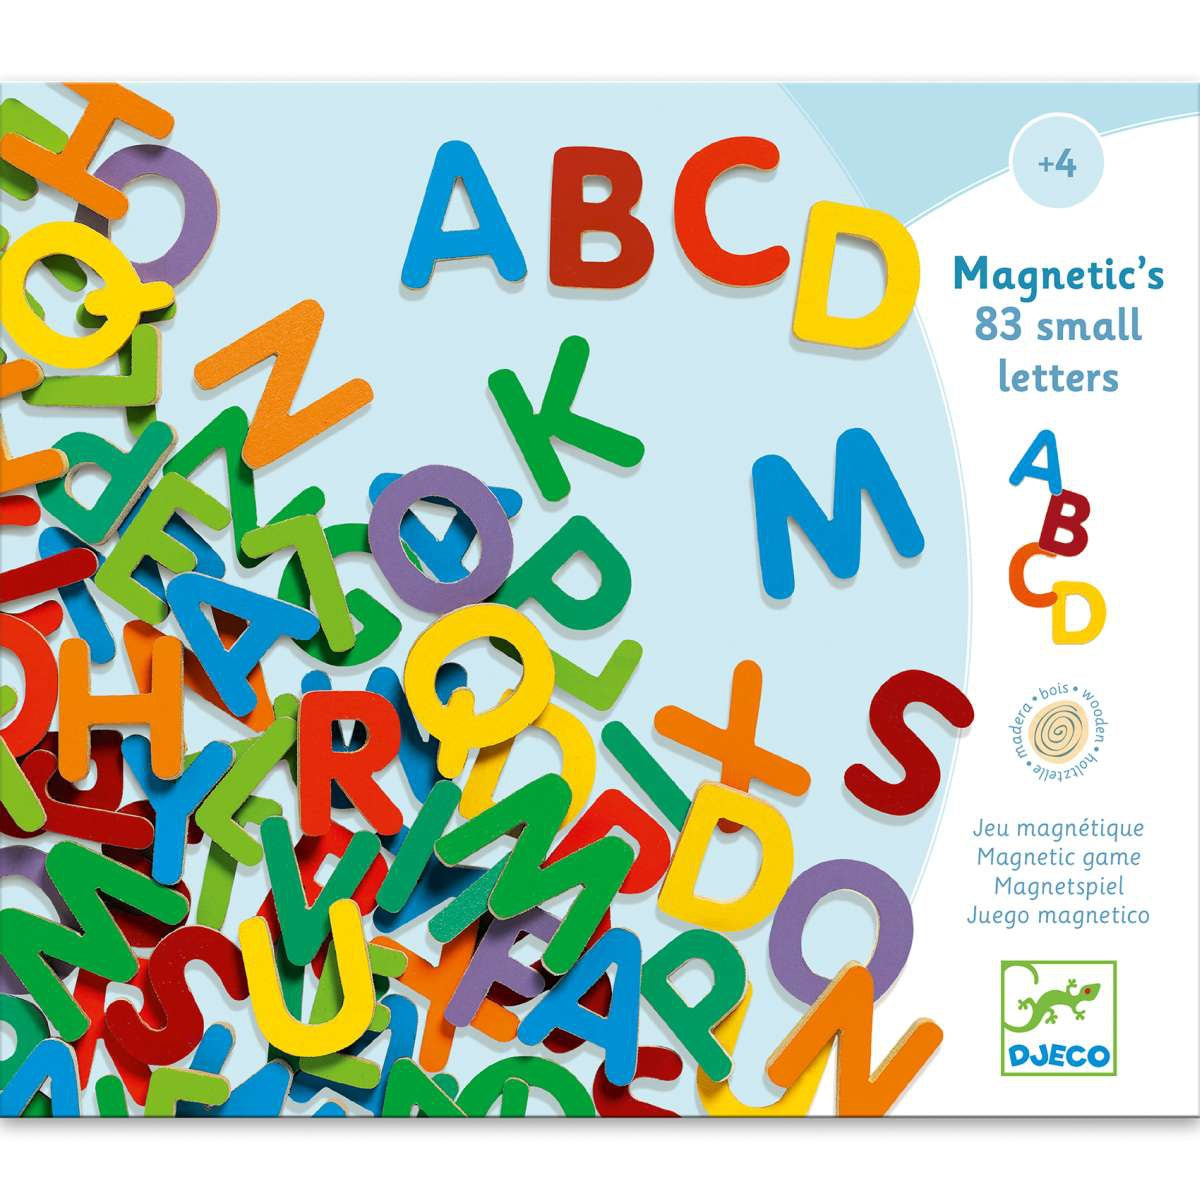 Mit dem Magnetspiel 83 SMALL LETTERS in bunt von Djeco lernen Kinder ab 4 Jahren spielerisch das Alphabet. Die einzelnen Buchstaben sind stabil aus Holz gefertigt, jeweils etwa 3 cm groß und bunt lackiert. Die kindliche Aufmachung regt immer wieder das Interesse an. So animiert das Holz-ABC dazu, erste Worte zu lernen und zu legen - auch am Kühlschrank oder einer Magnettafel. 